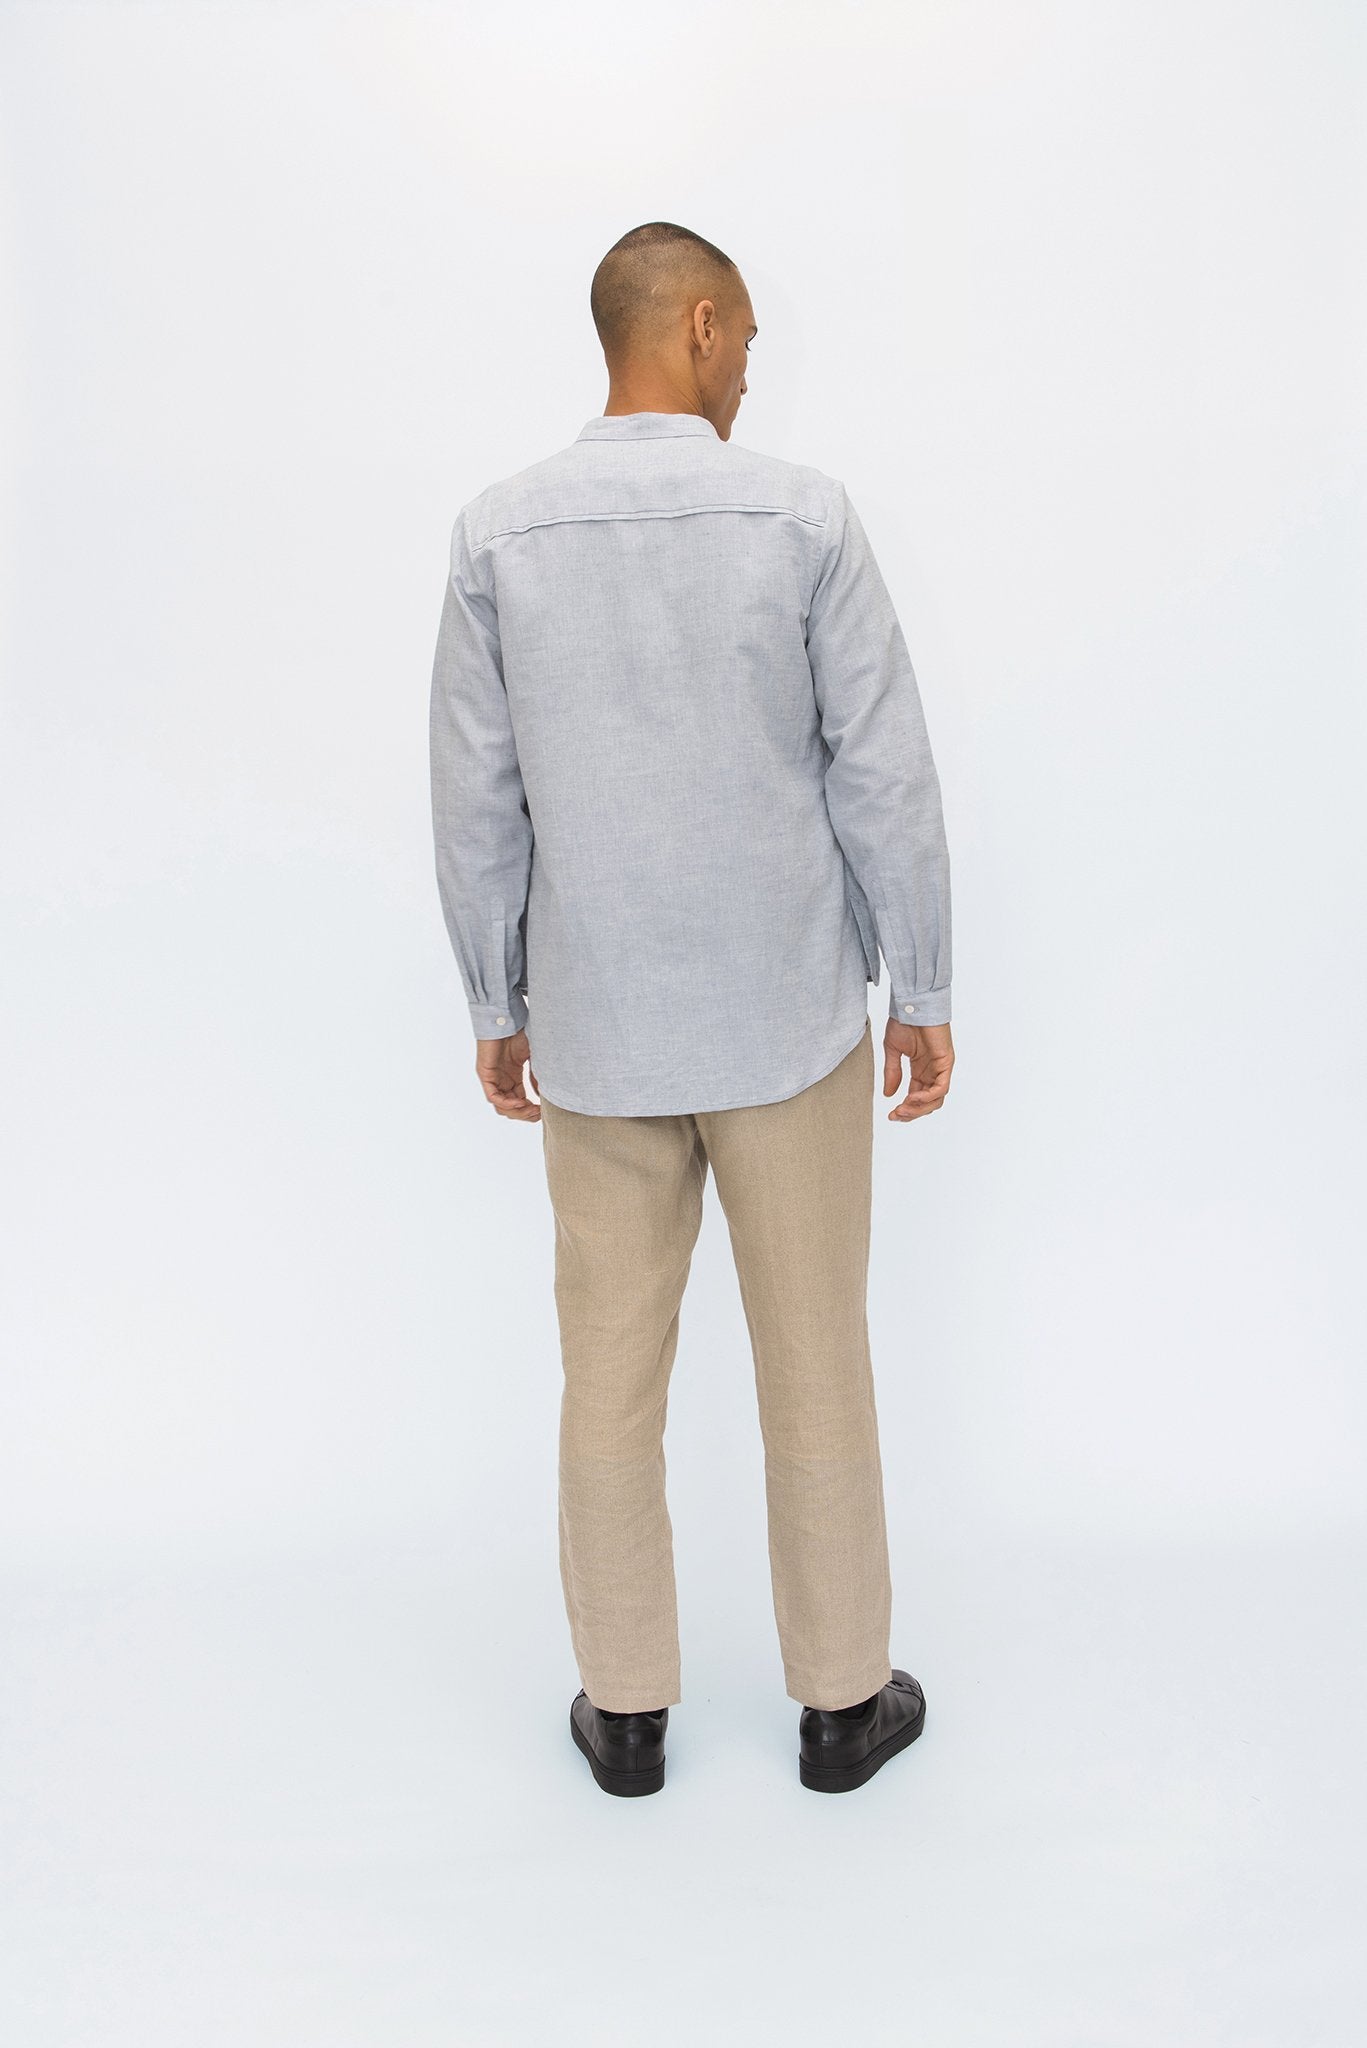 A.BCH A.05 Light Indigo Chambray Button Up Shirt in Hemp and Organic Cotton